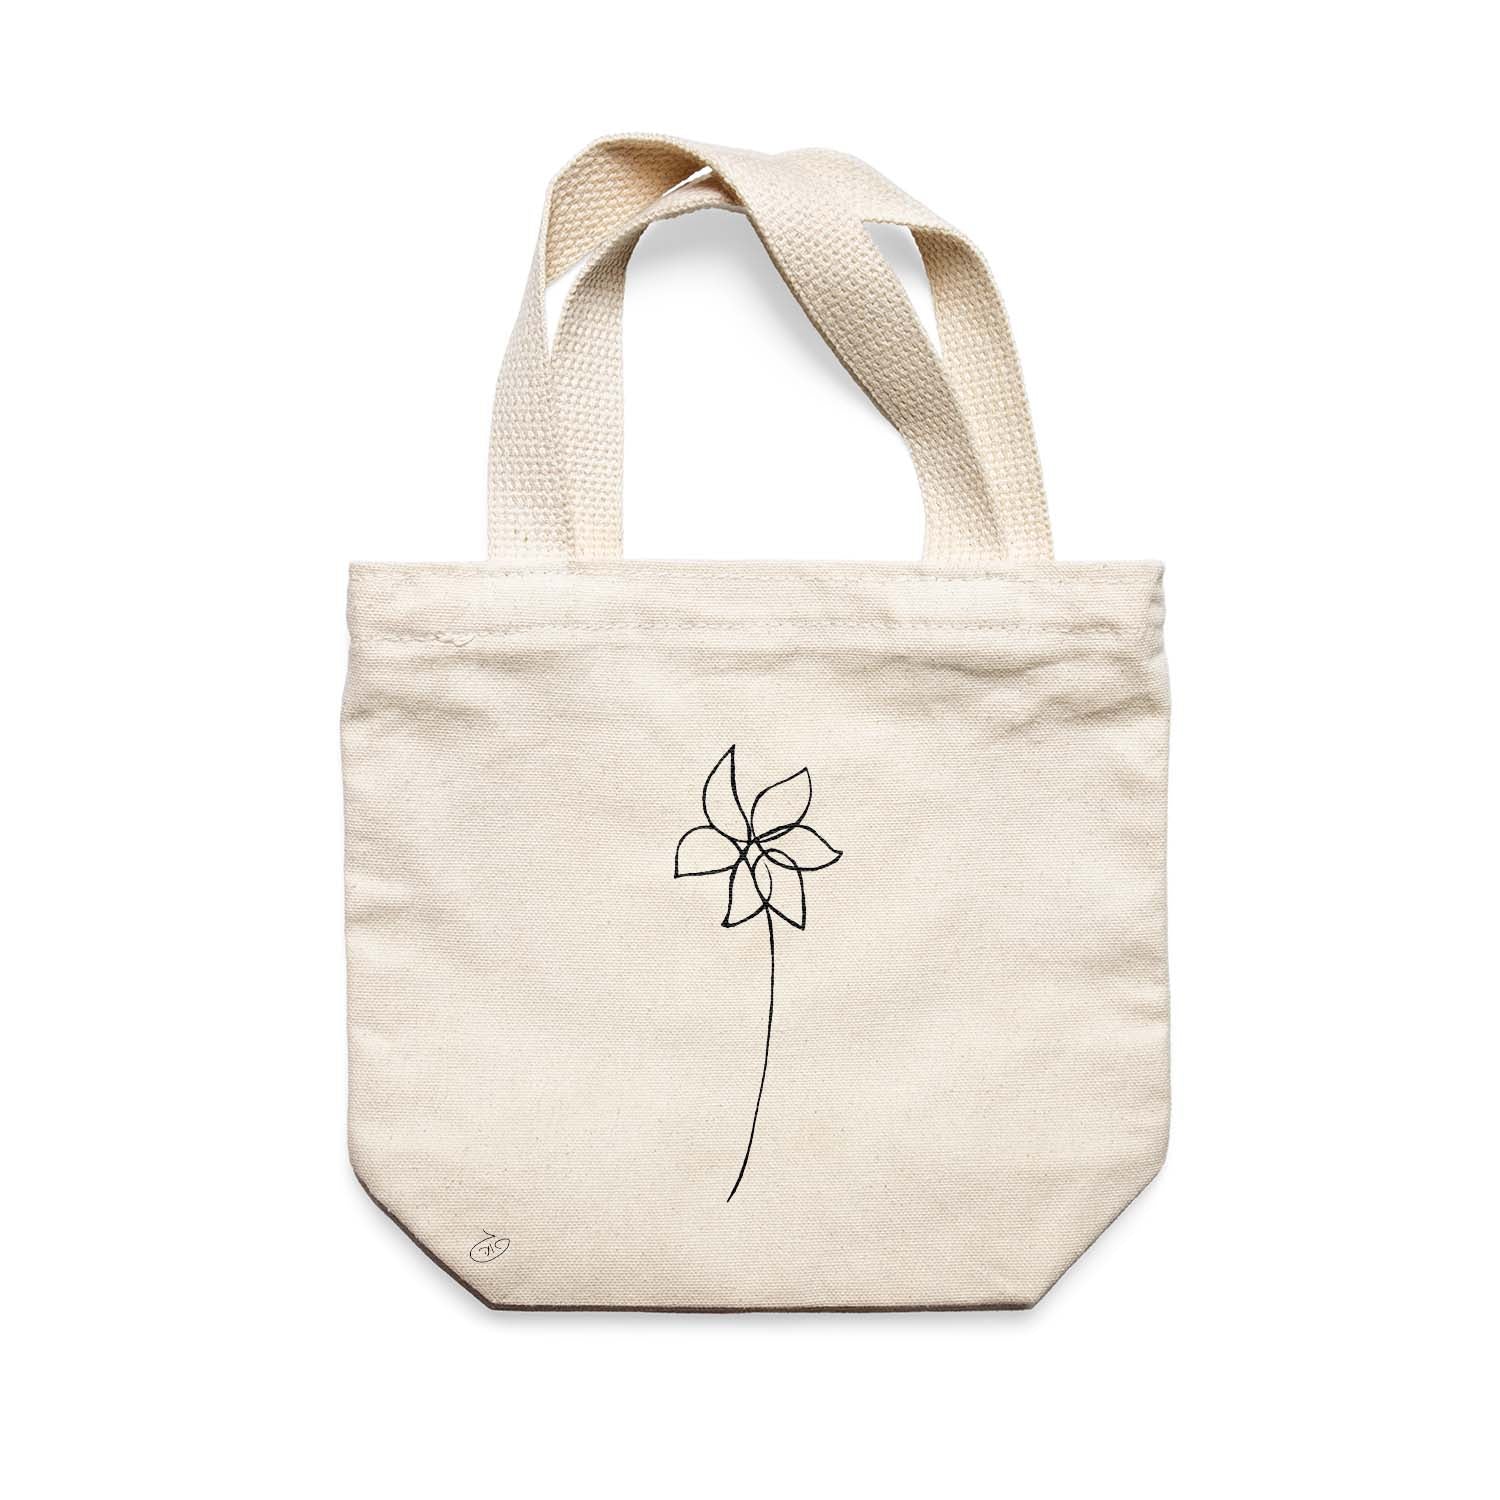 תיק צד לנשים וגברים מבד 100% כותנה טבעית בעיצוב One Line Flower - Abigail Tote Bag מציור מקורי של גאיה